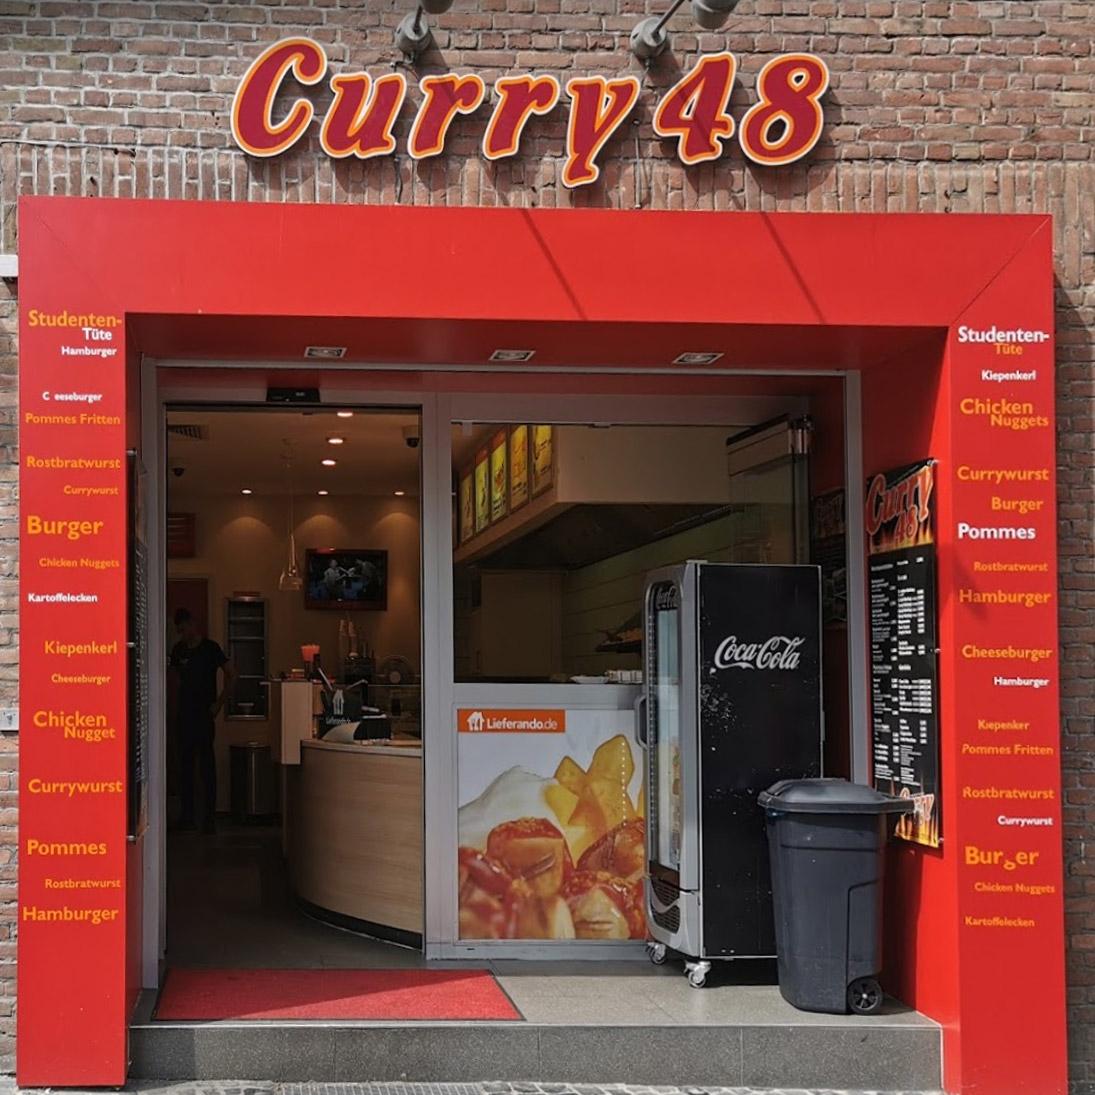 Restaurant "Curry 48 Restaurant GmbH" in Münster